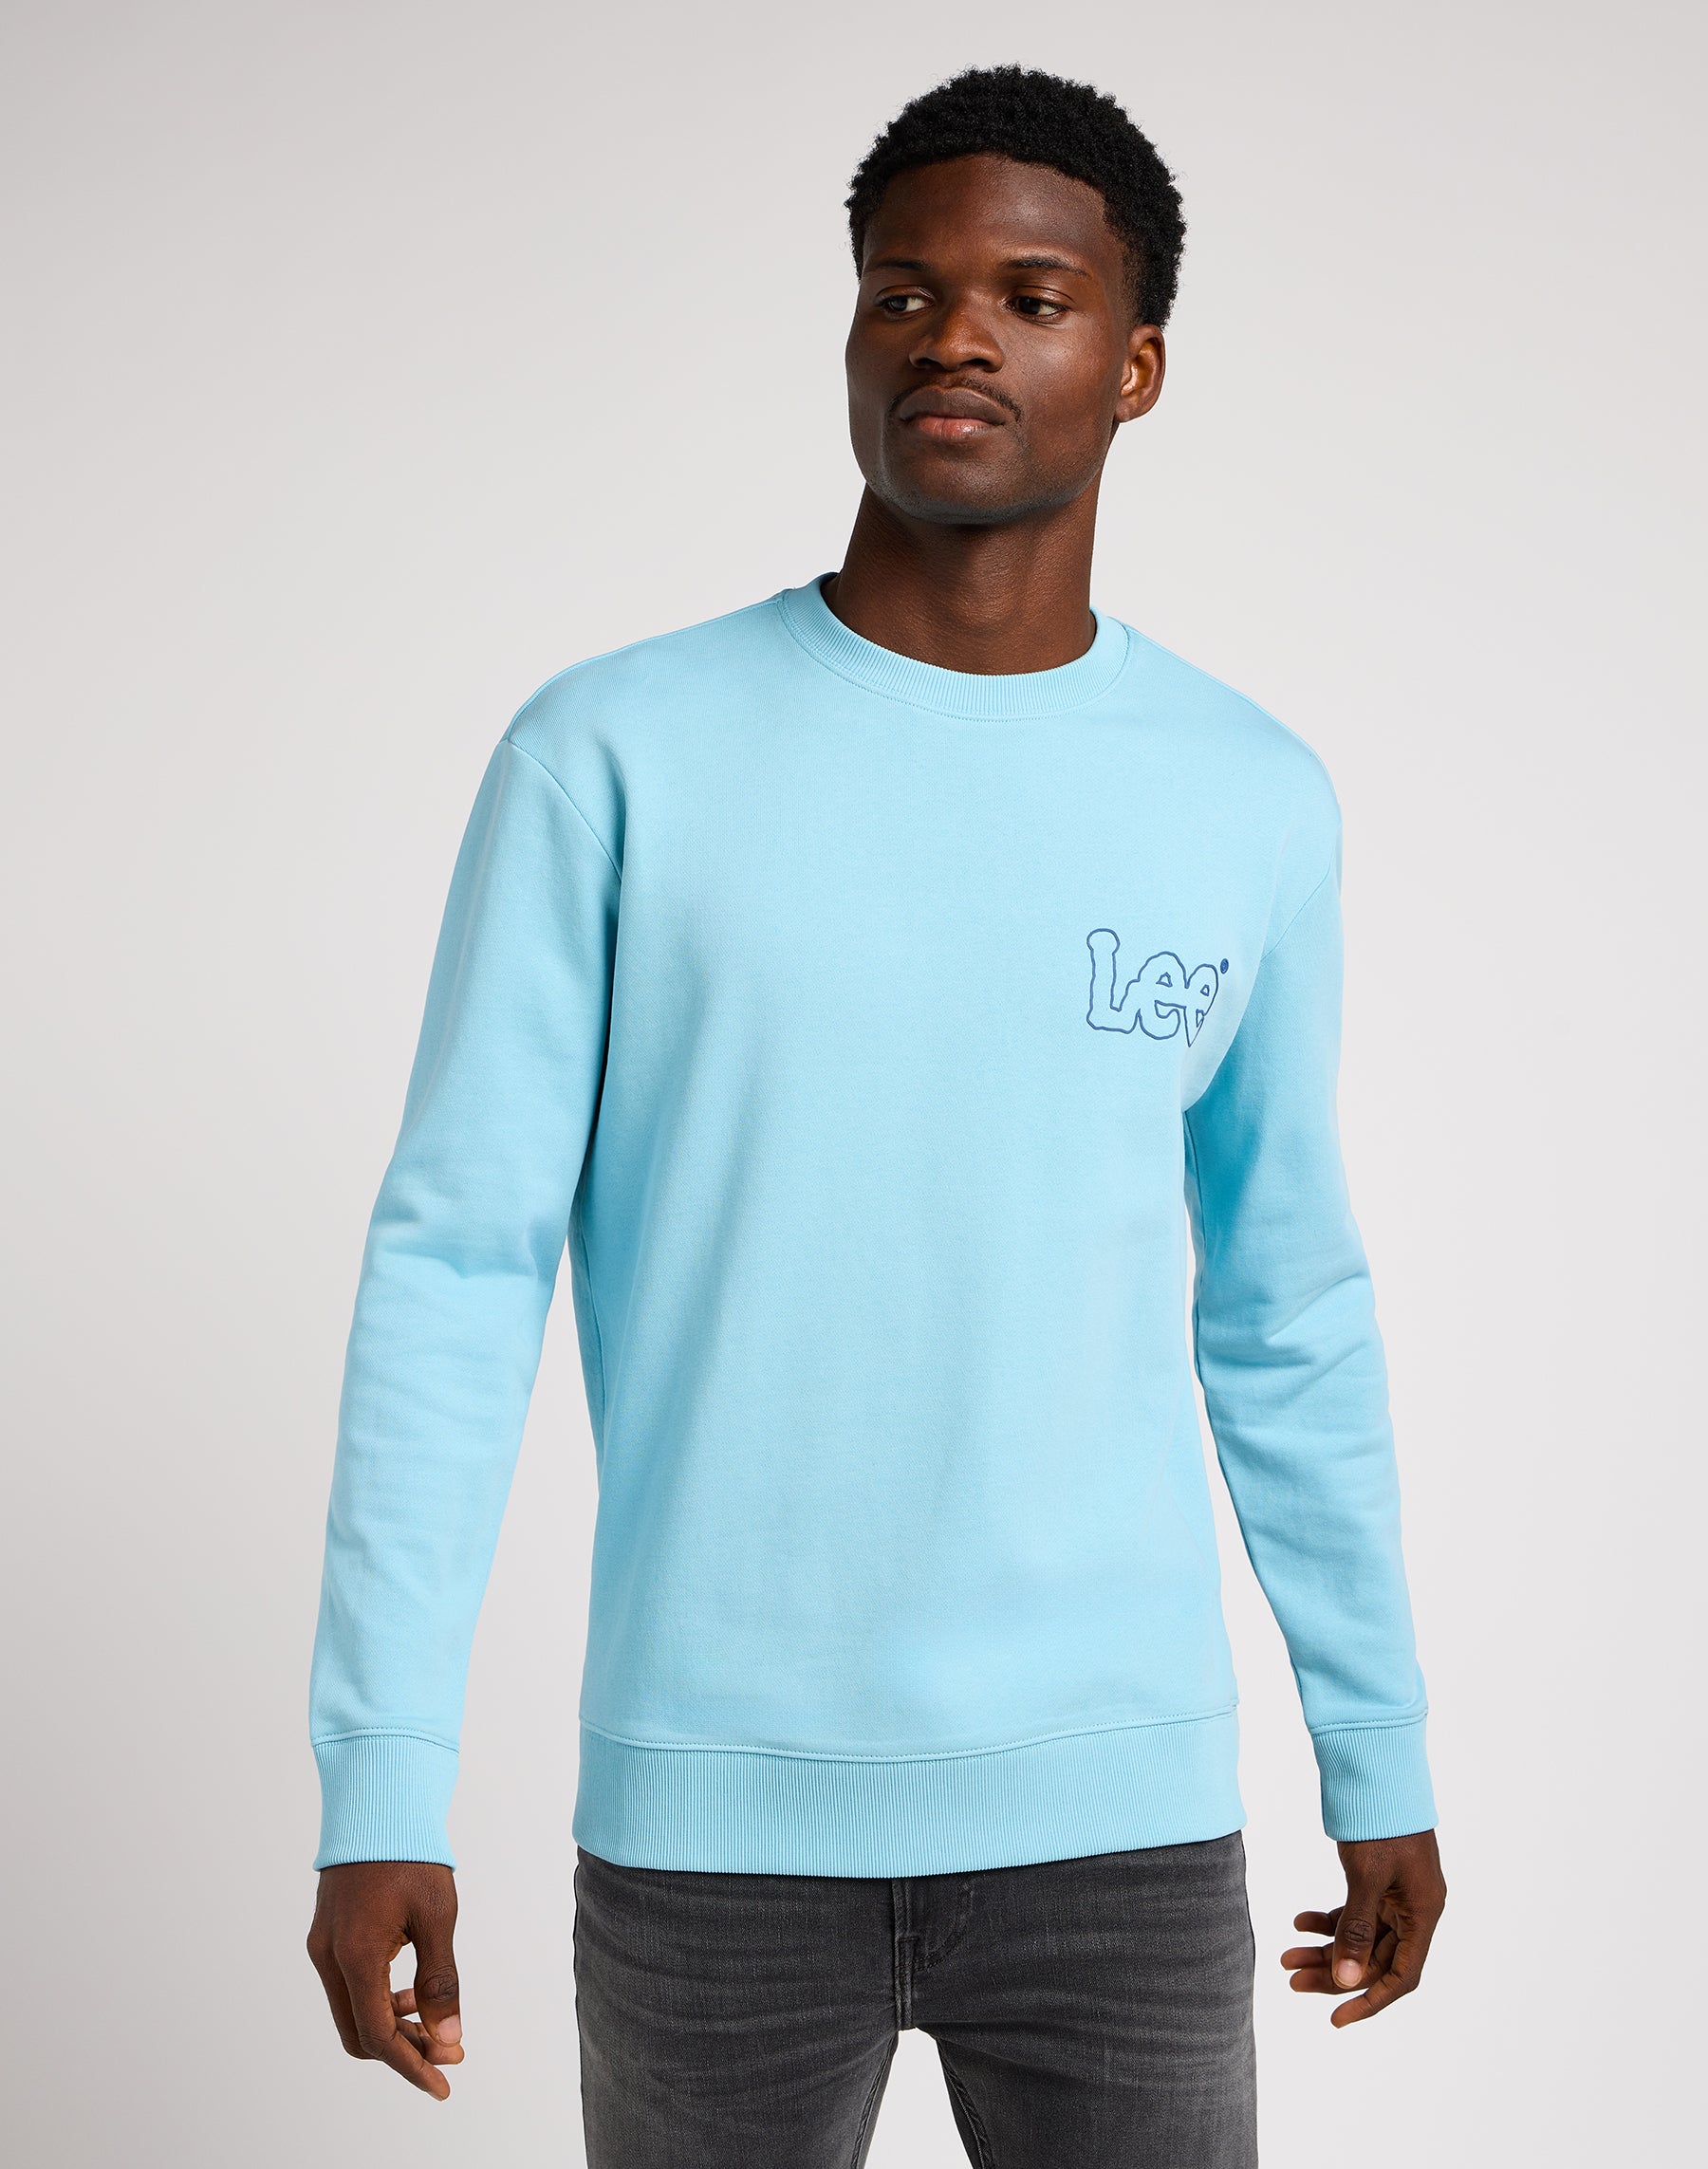 Wobbly Lee Sweater in Preppy Blue Sweatshirts Lee   